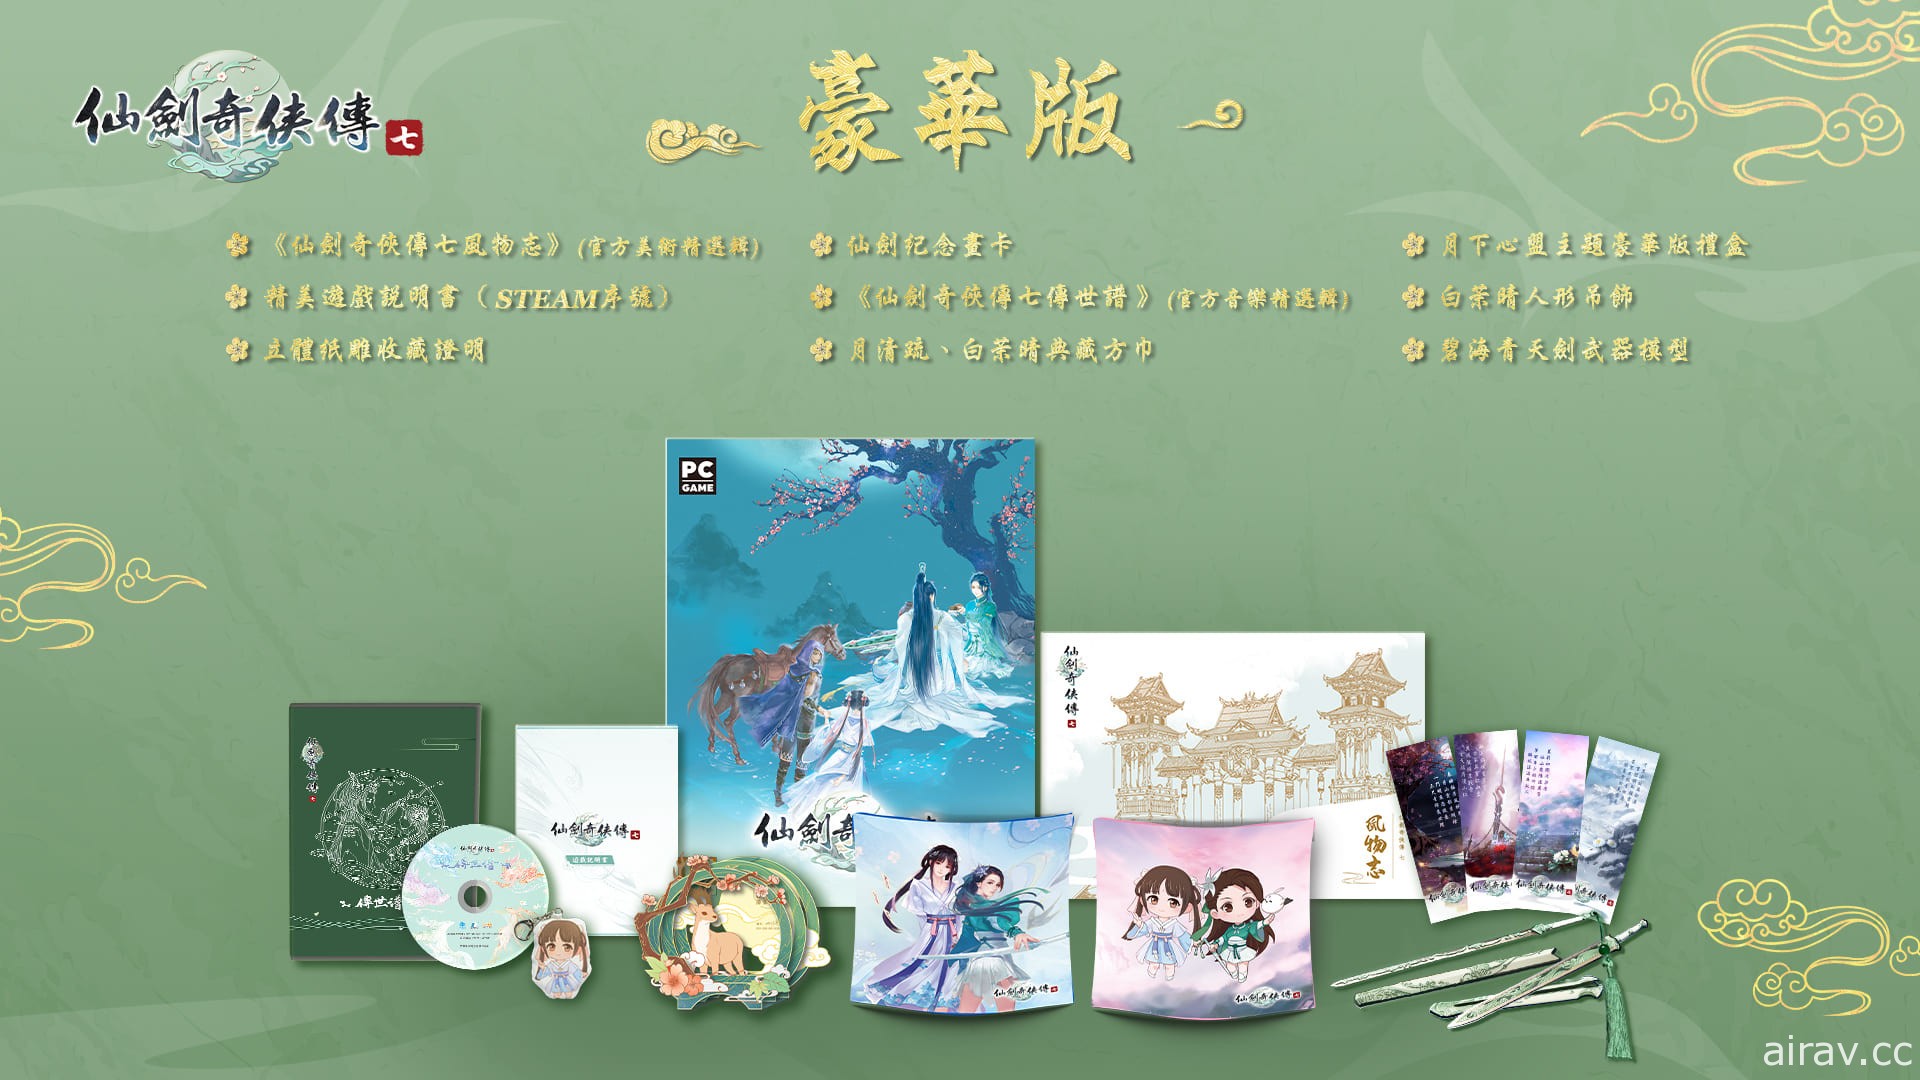 《仙劍奇俠傳七》宣布 10 月 22 日上市 公開繁體中文實體產品內容